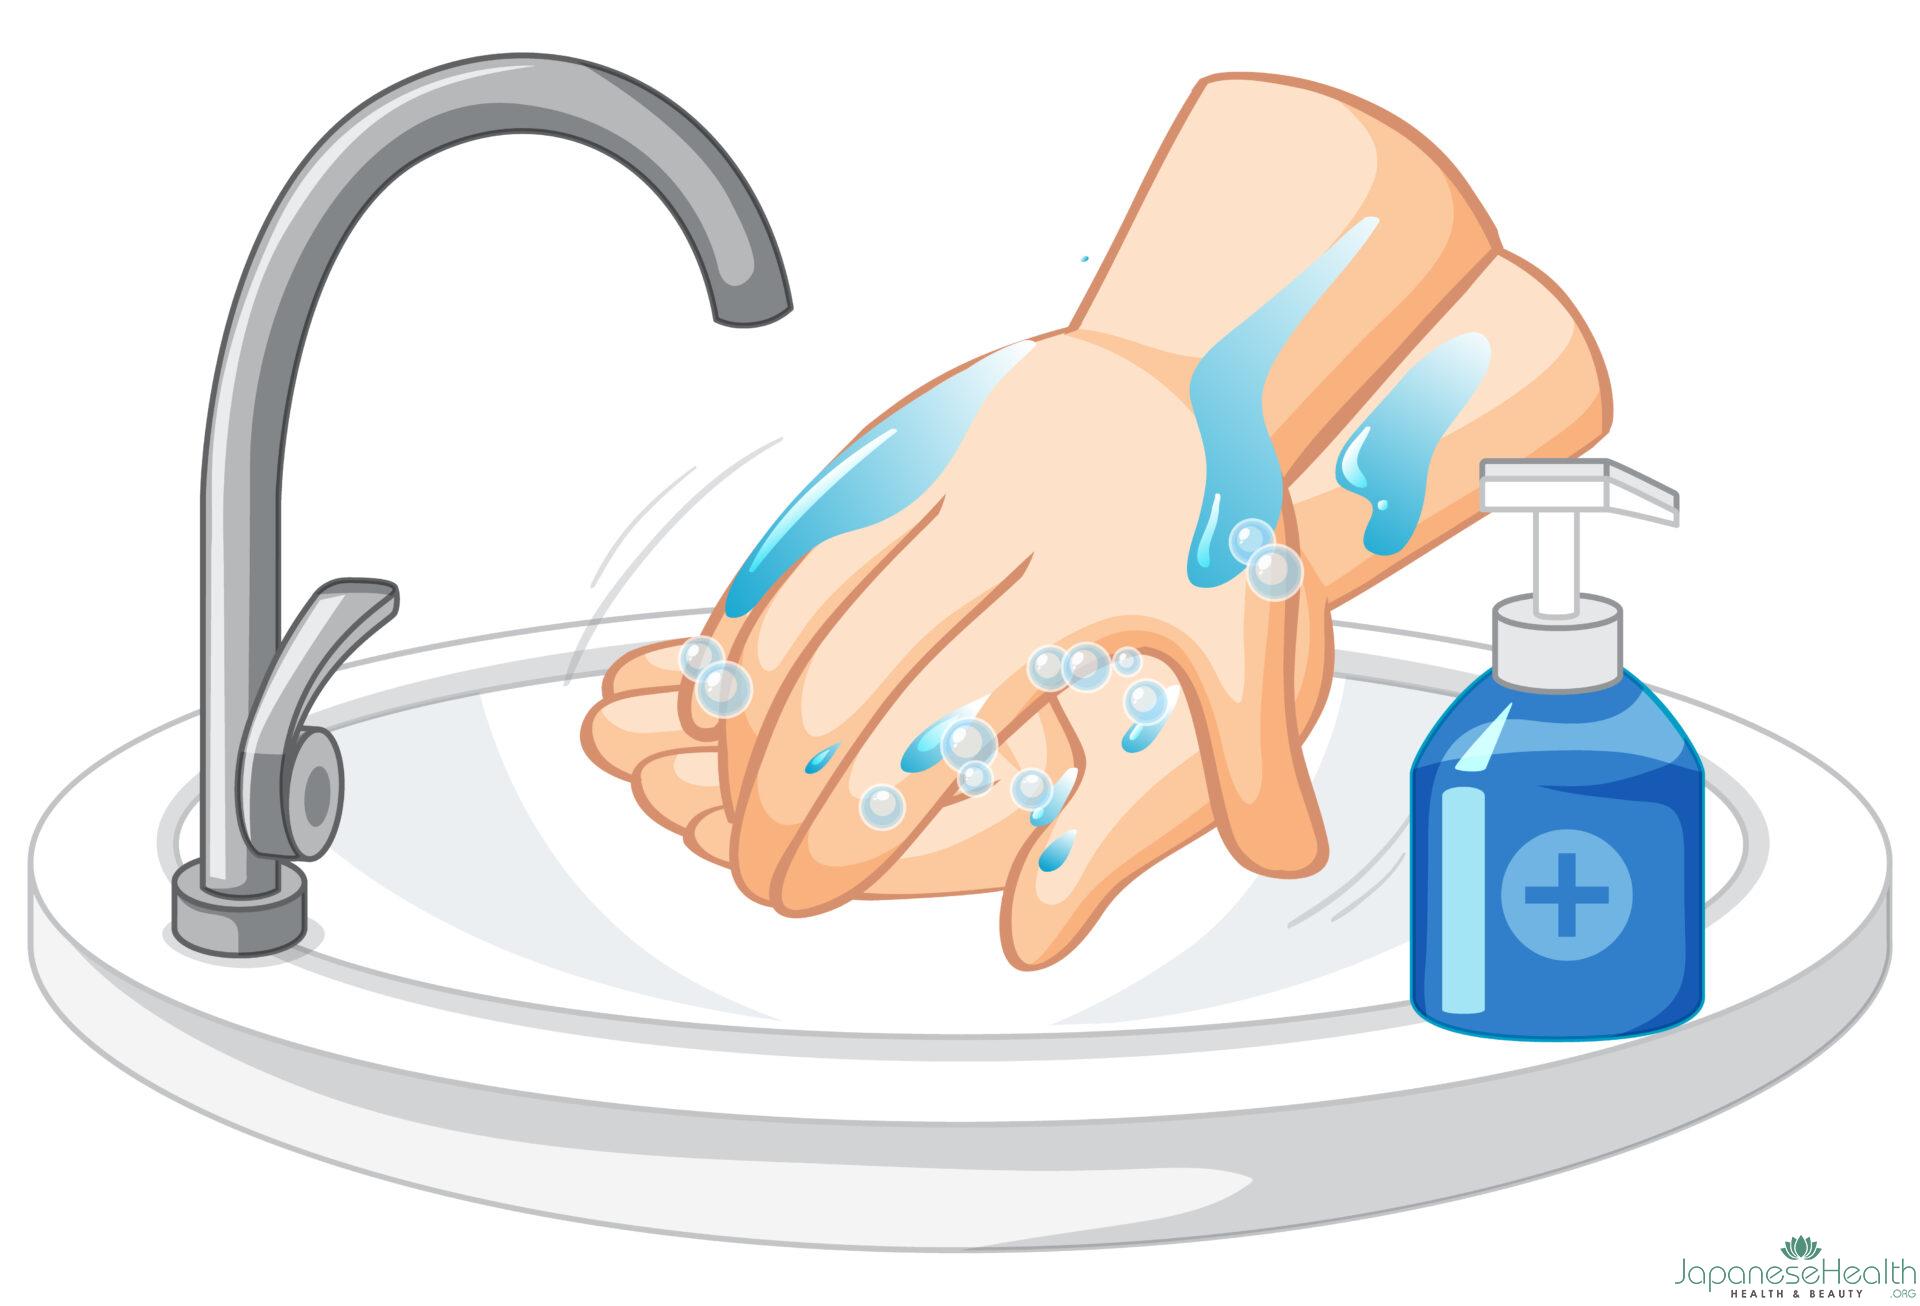 石鹸と流水で、少なくとも20秒間しっかりと手を洗いましょう。